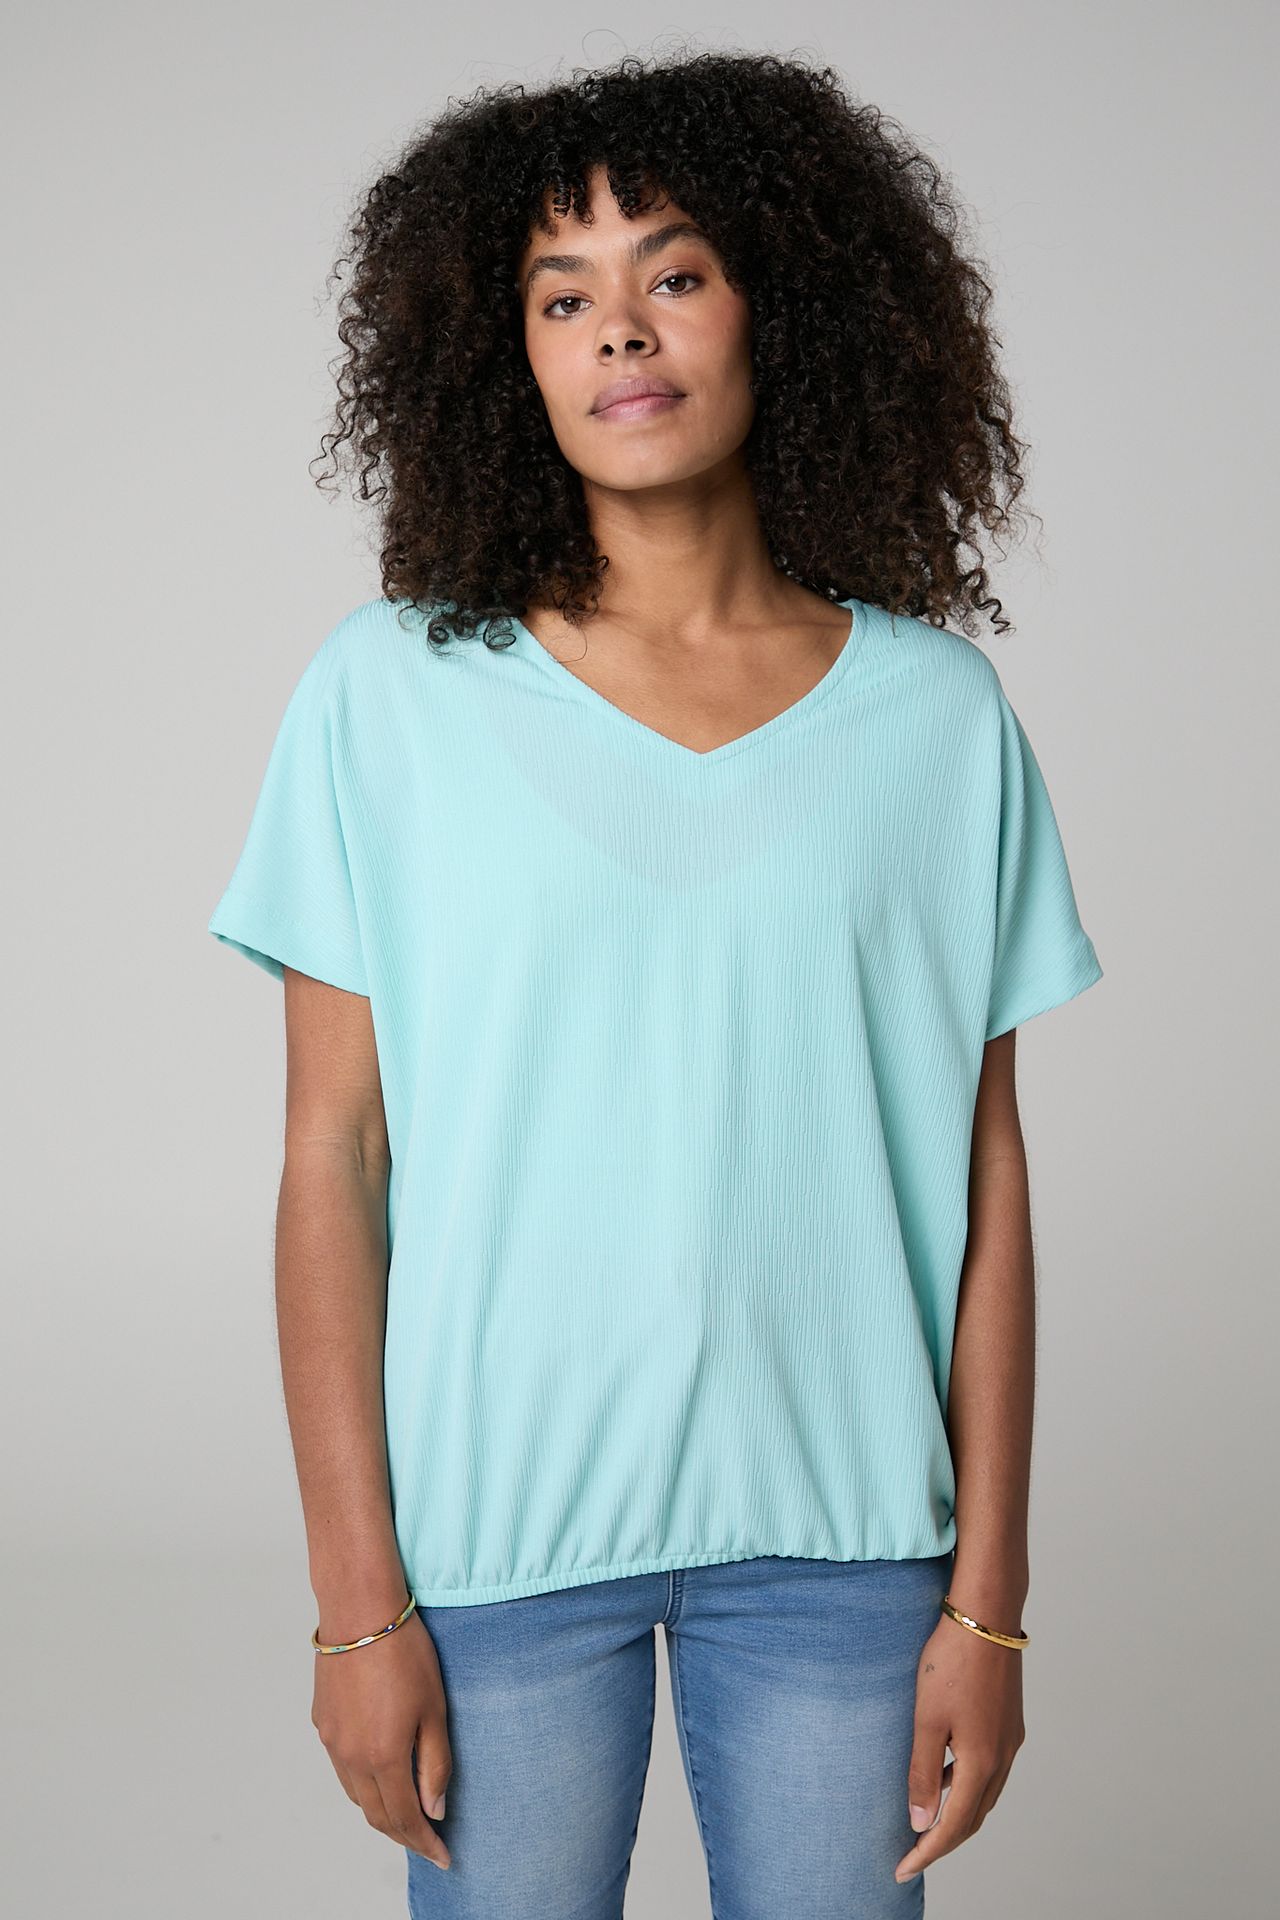  Turquoise shirt turquoise 211648-475-44